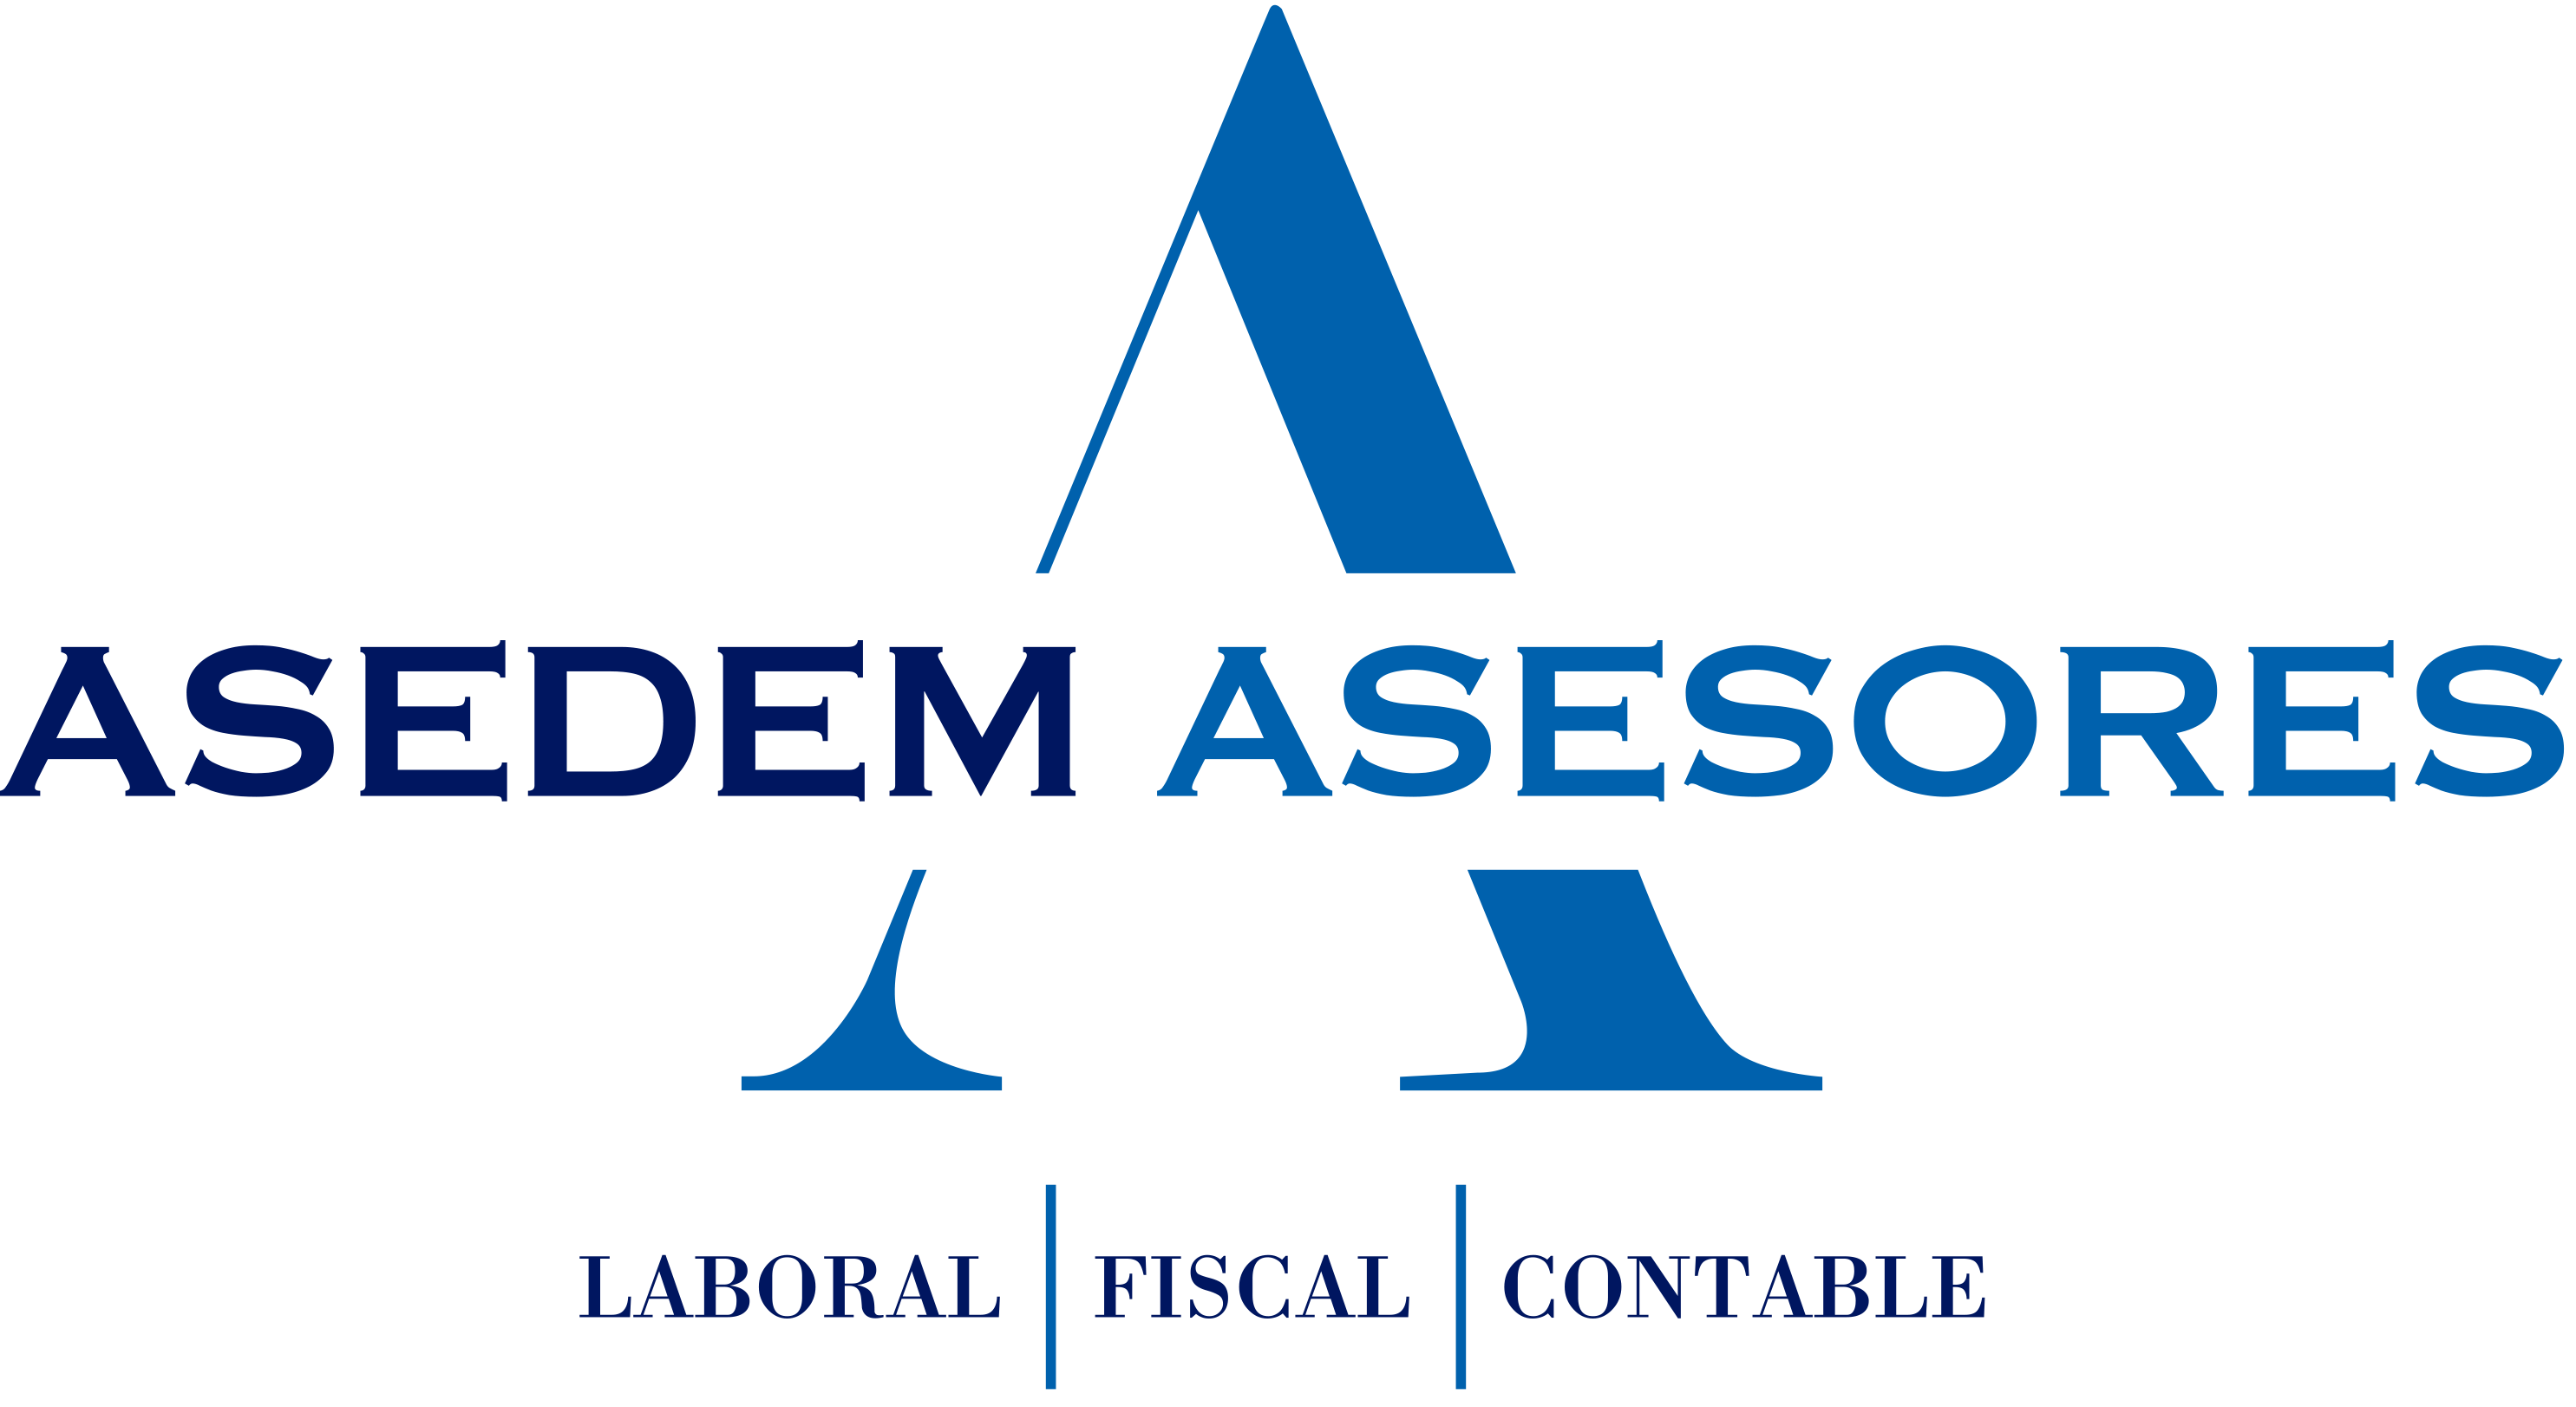 ASEDEM Asesoramiento laboral, fiscal y contable SL